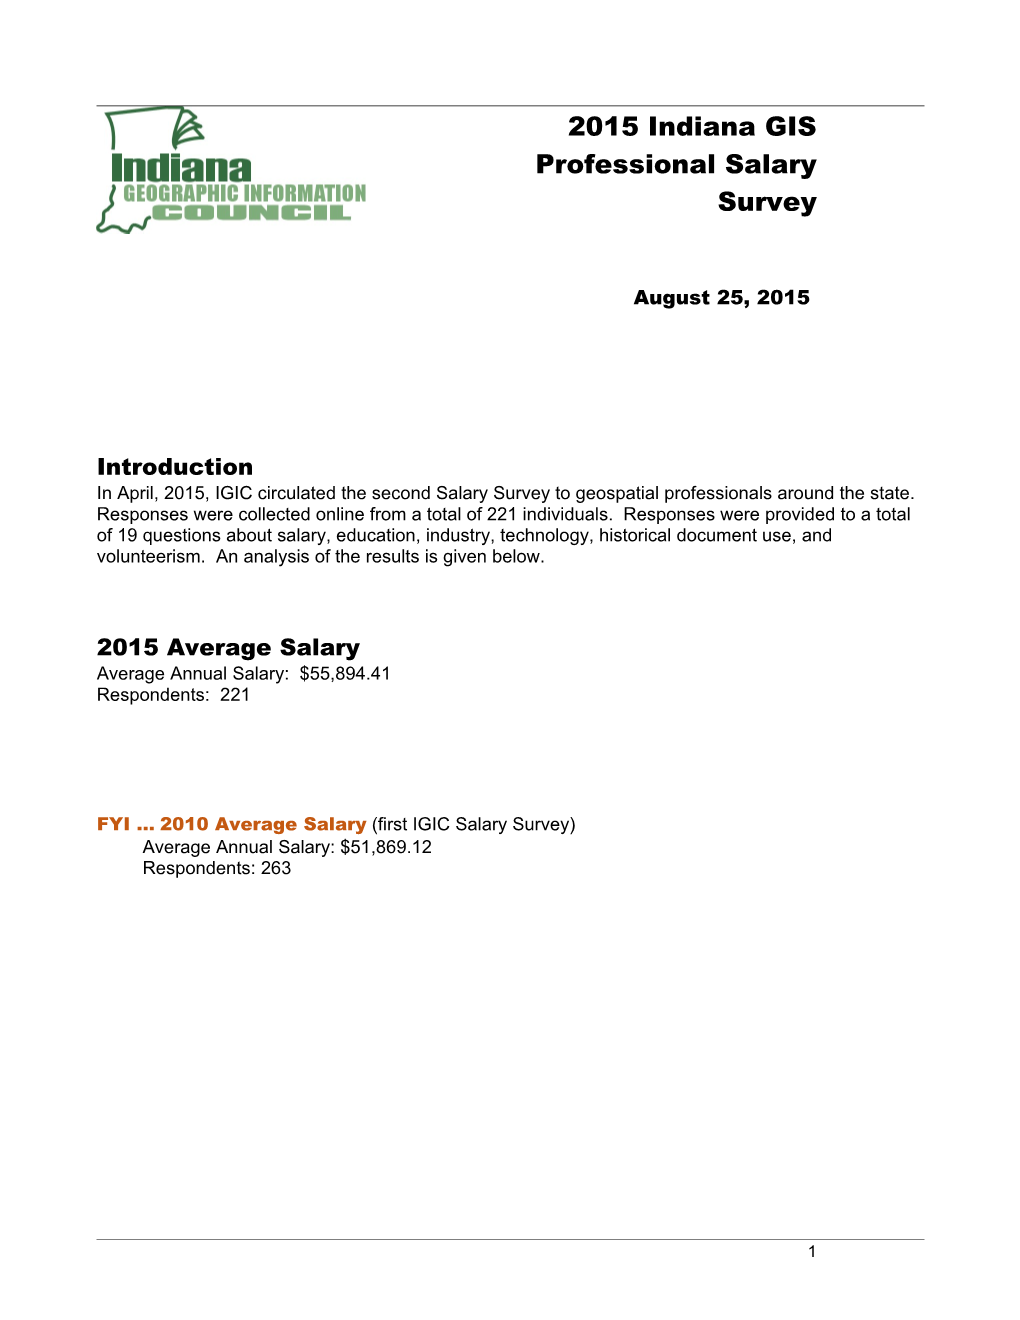 2015 Indiana GIS Professional Salary Survey